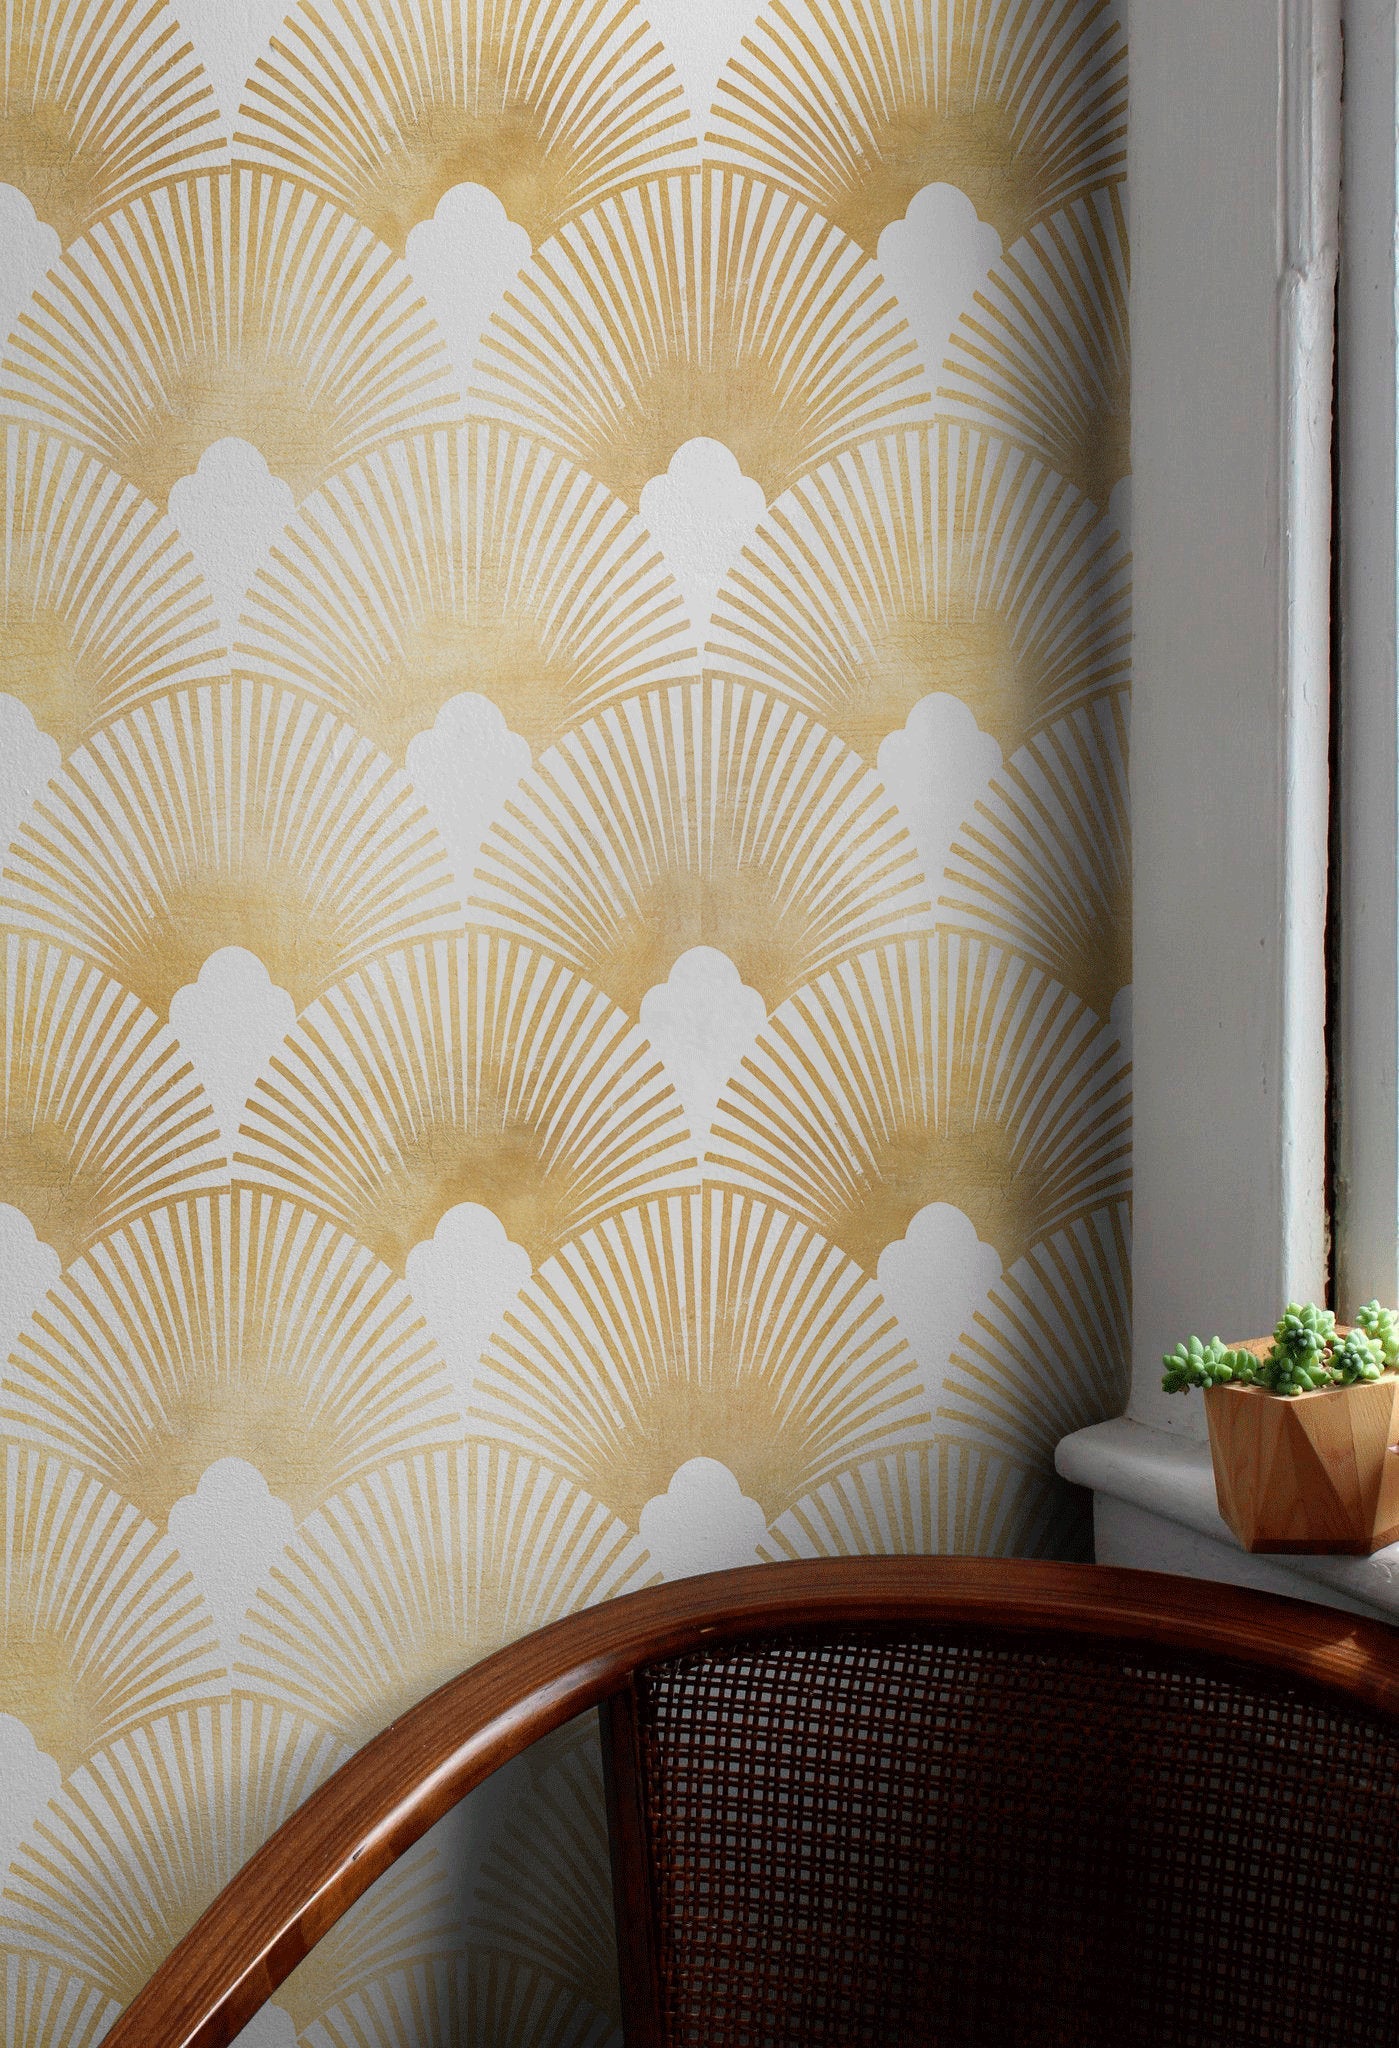 Gold & Navy Art Deco Fan Repeat Pattern Wallpaper